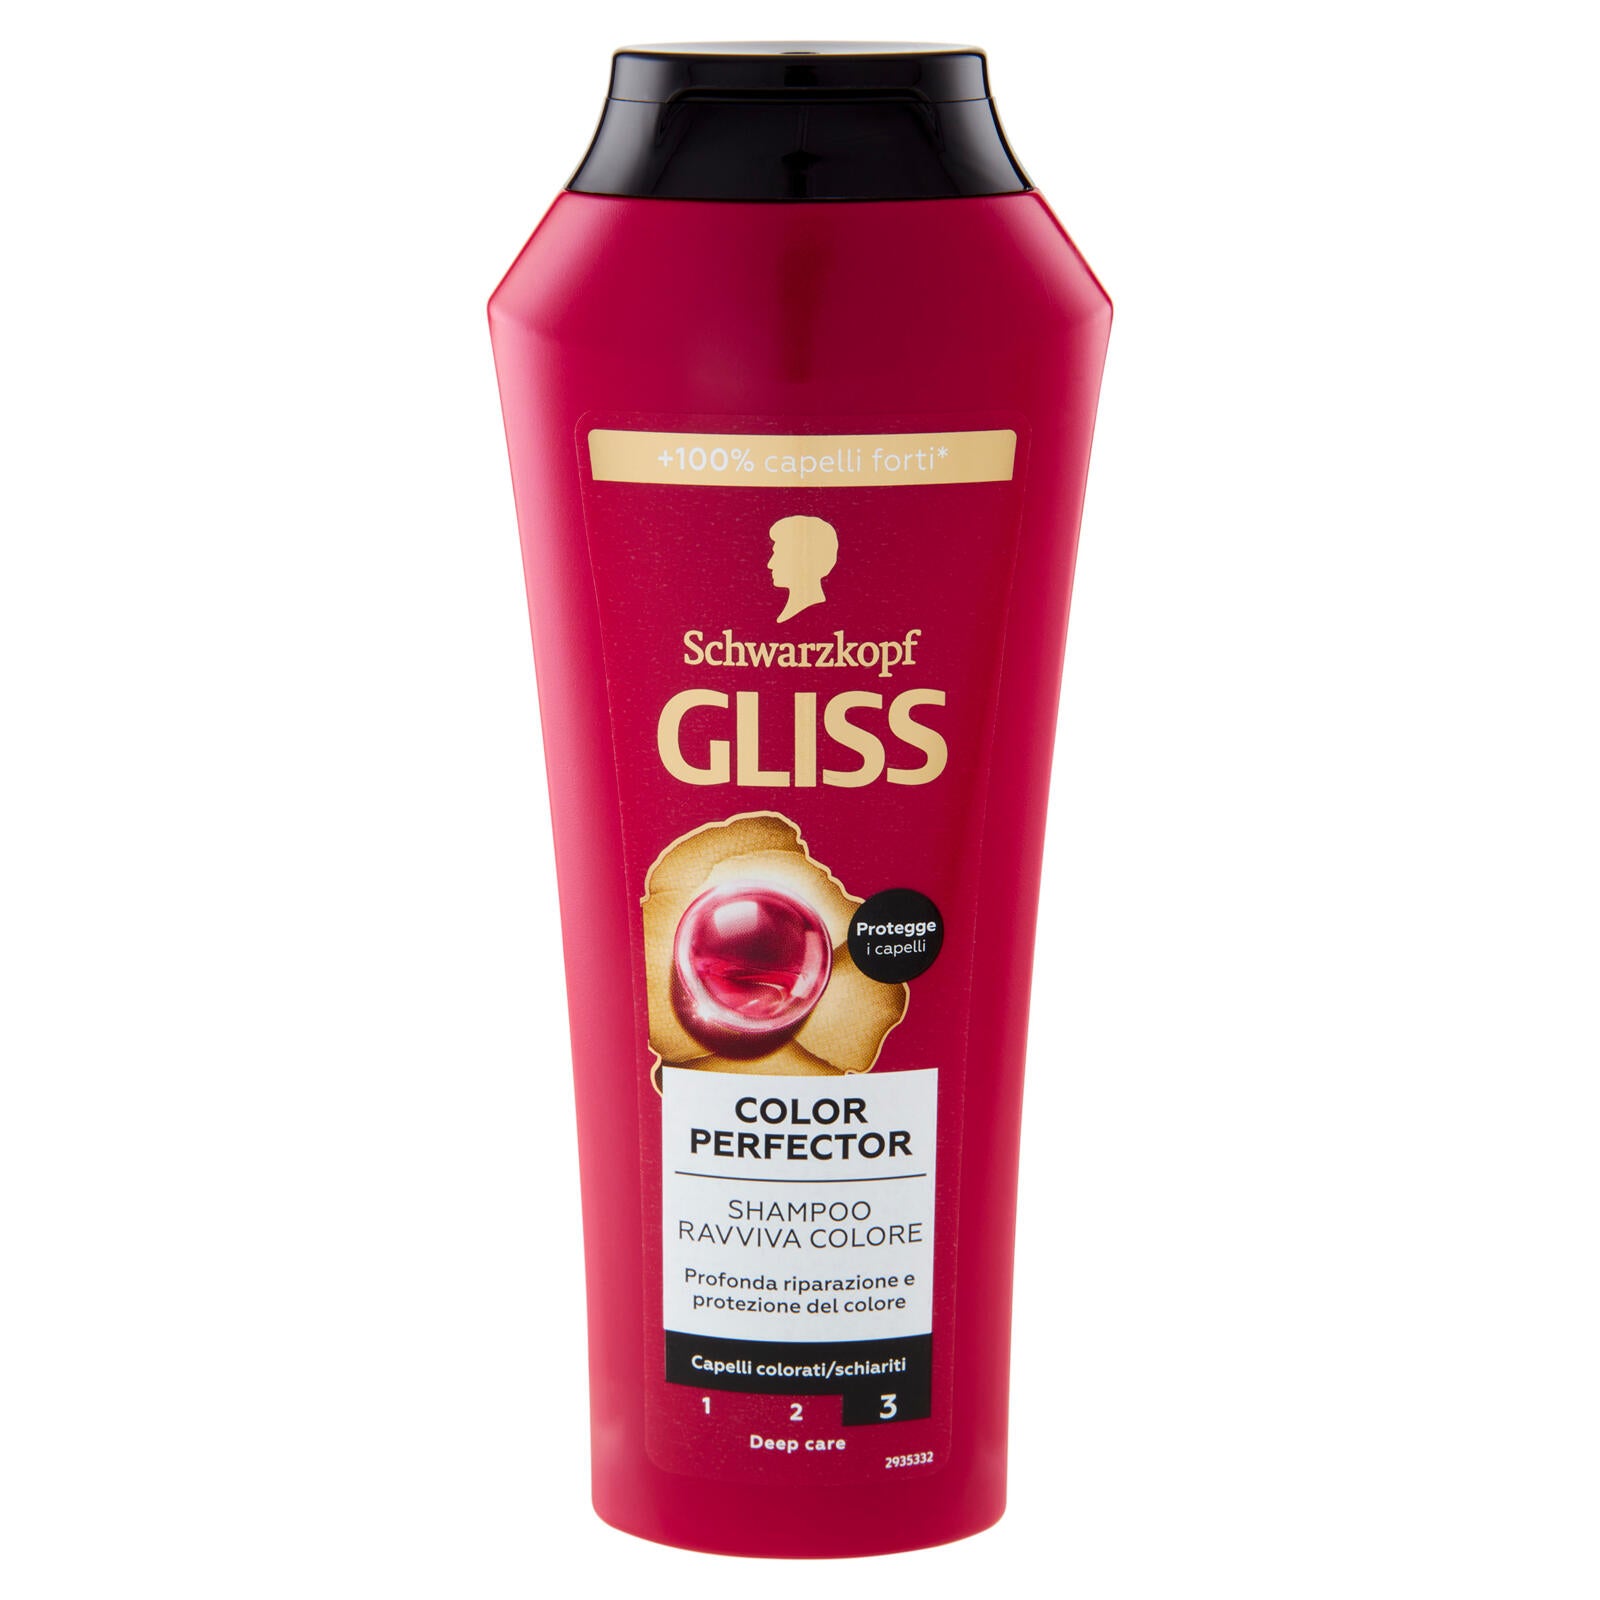 Gliss Color Perfector Shampoo Ravviva Colore 250 ml